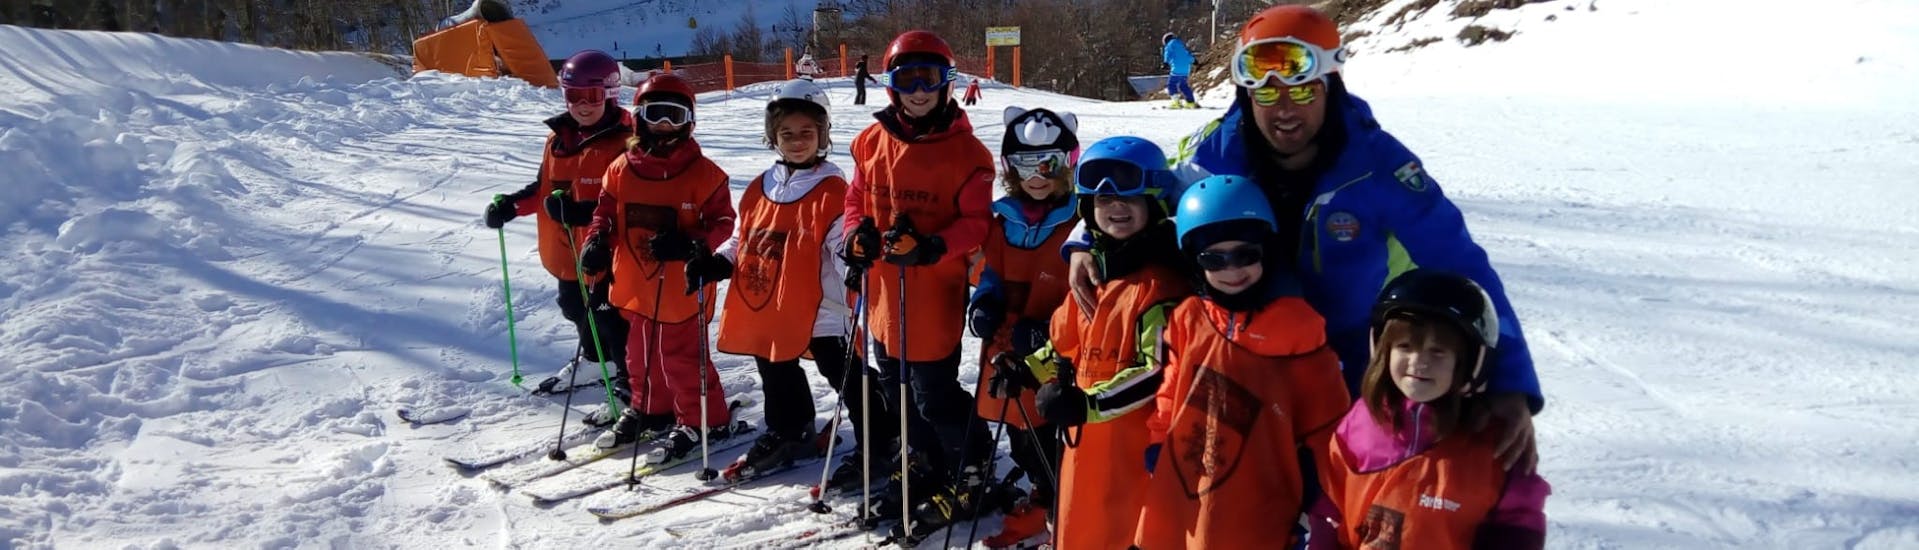 Kinder-Skikurs ab 4 Jahren für alle Levels.